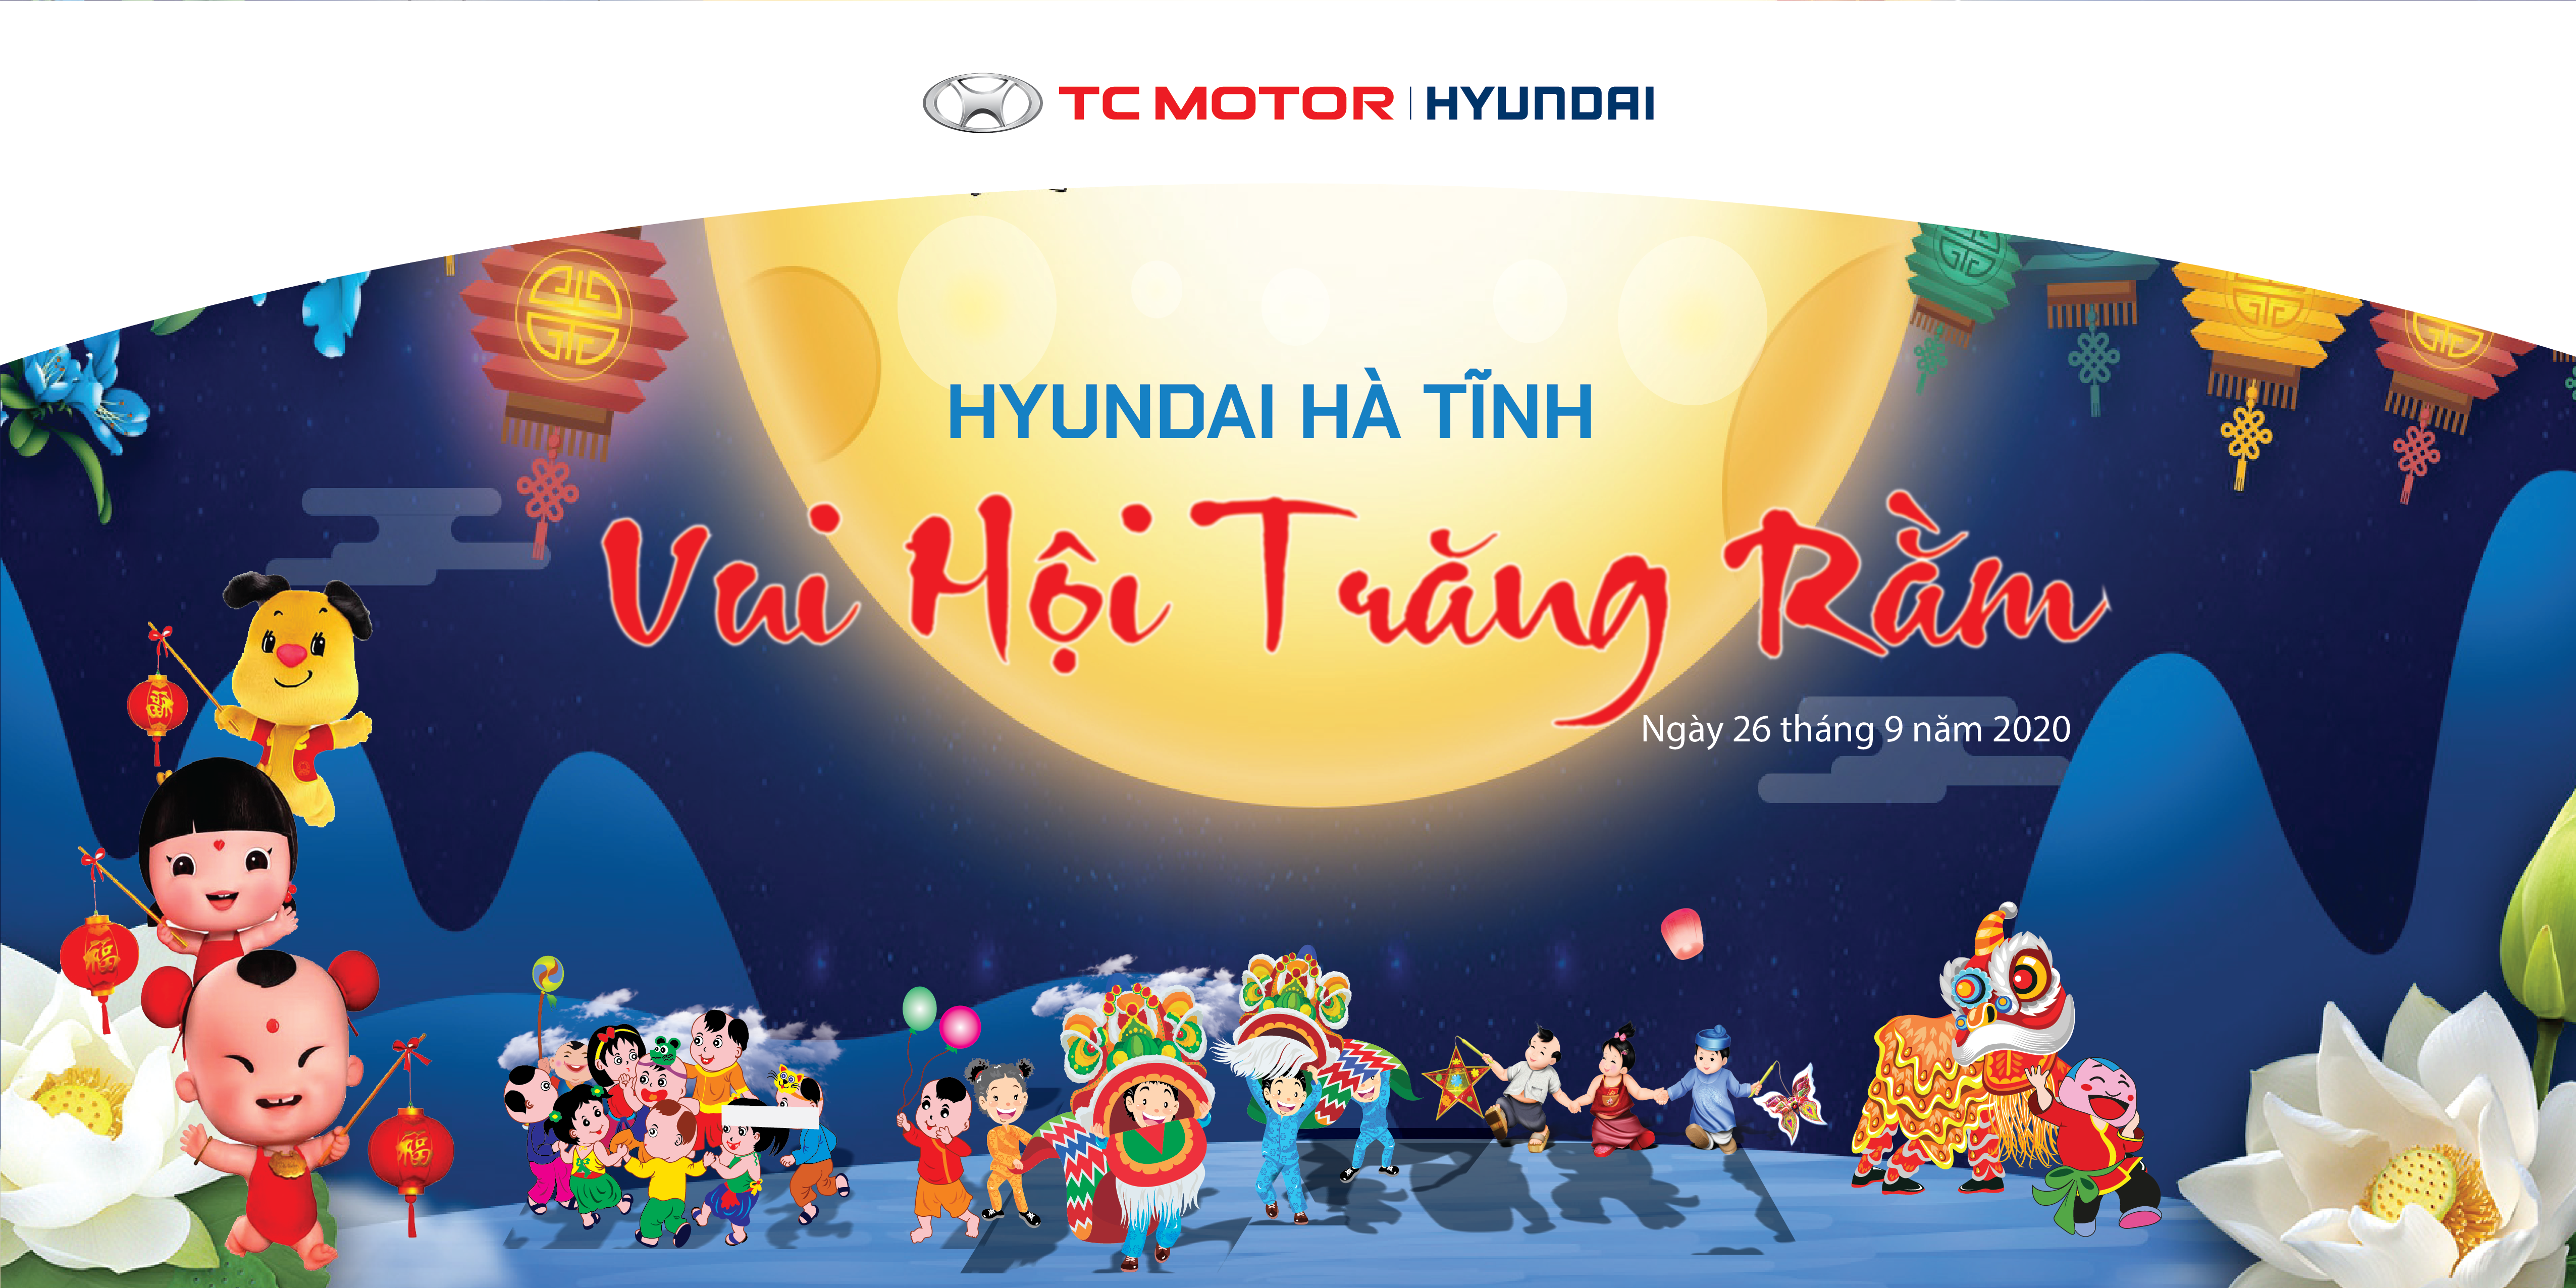 Hyundai Hà Tĩnh tổ chức chương trình “ Vui hội trăng rằm - gắn kết Hyundai”